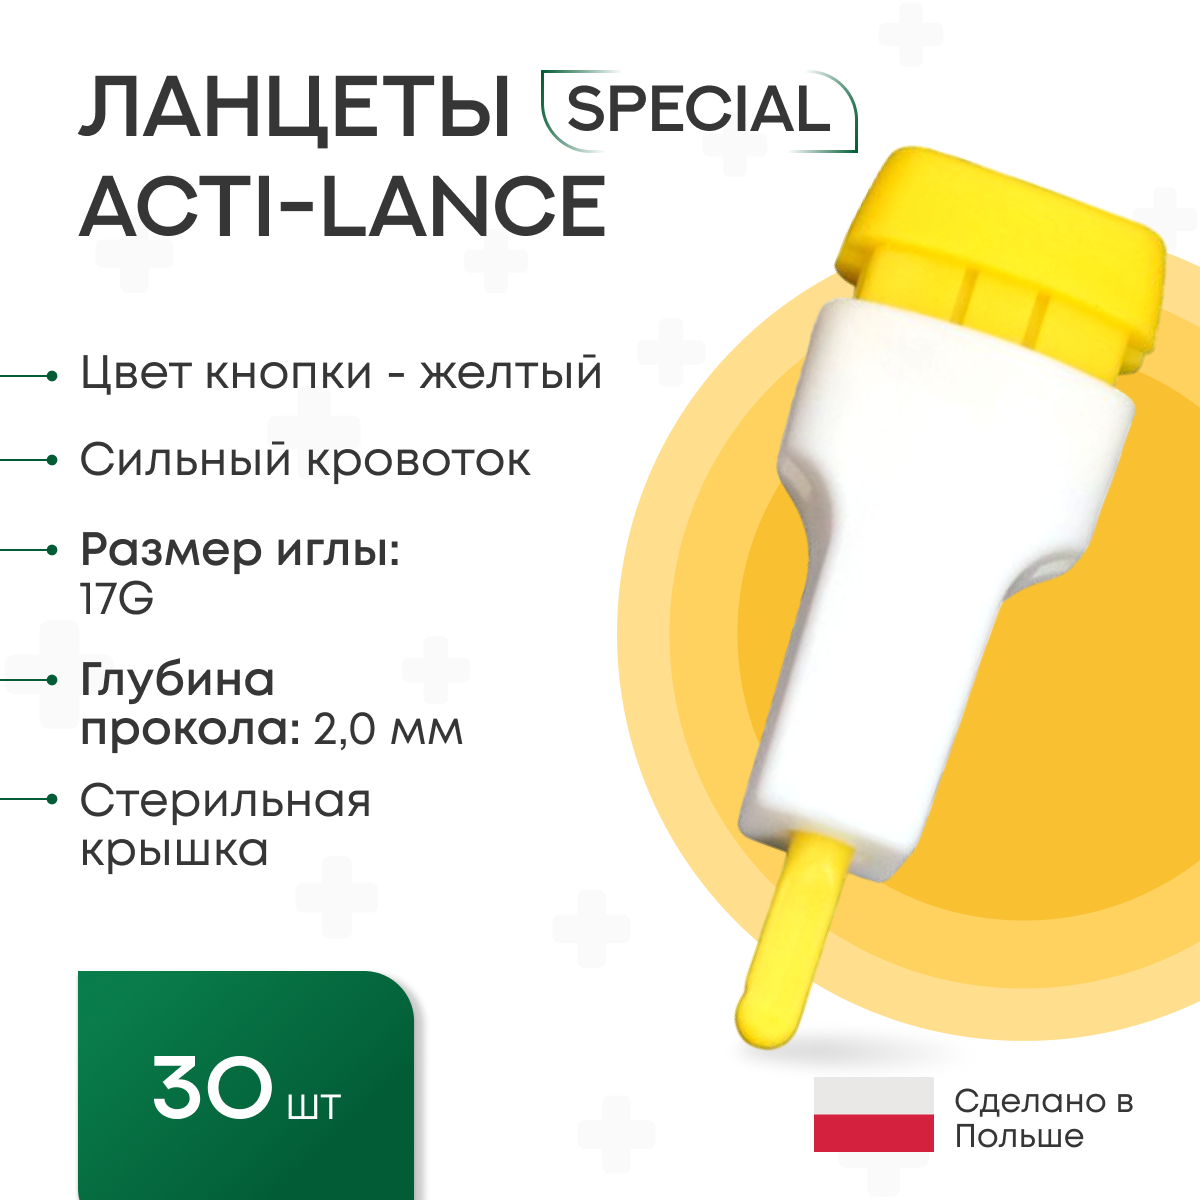 Ланцеты Acti-lance Special для капиллярного забора крови 30 шт., глубина прокола 2,0 мм, лезвие, желтые